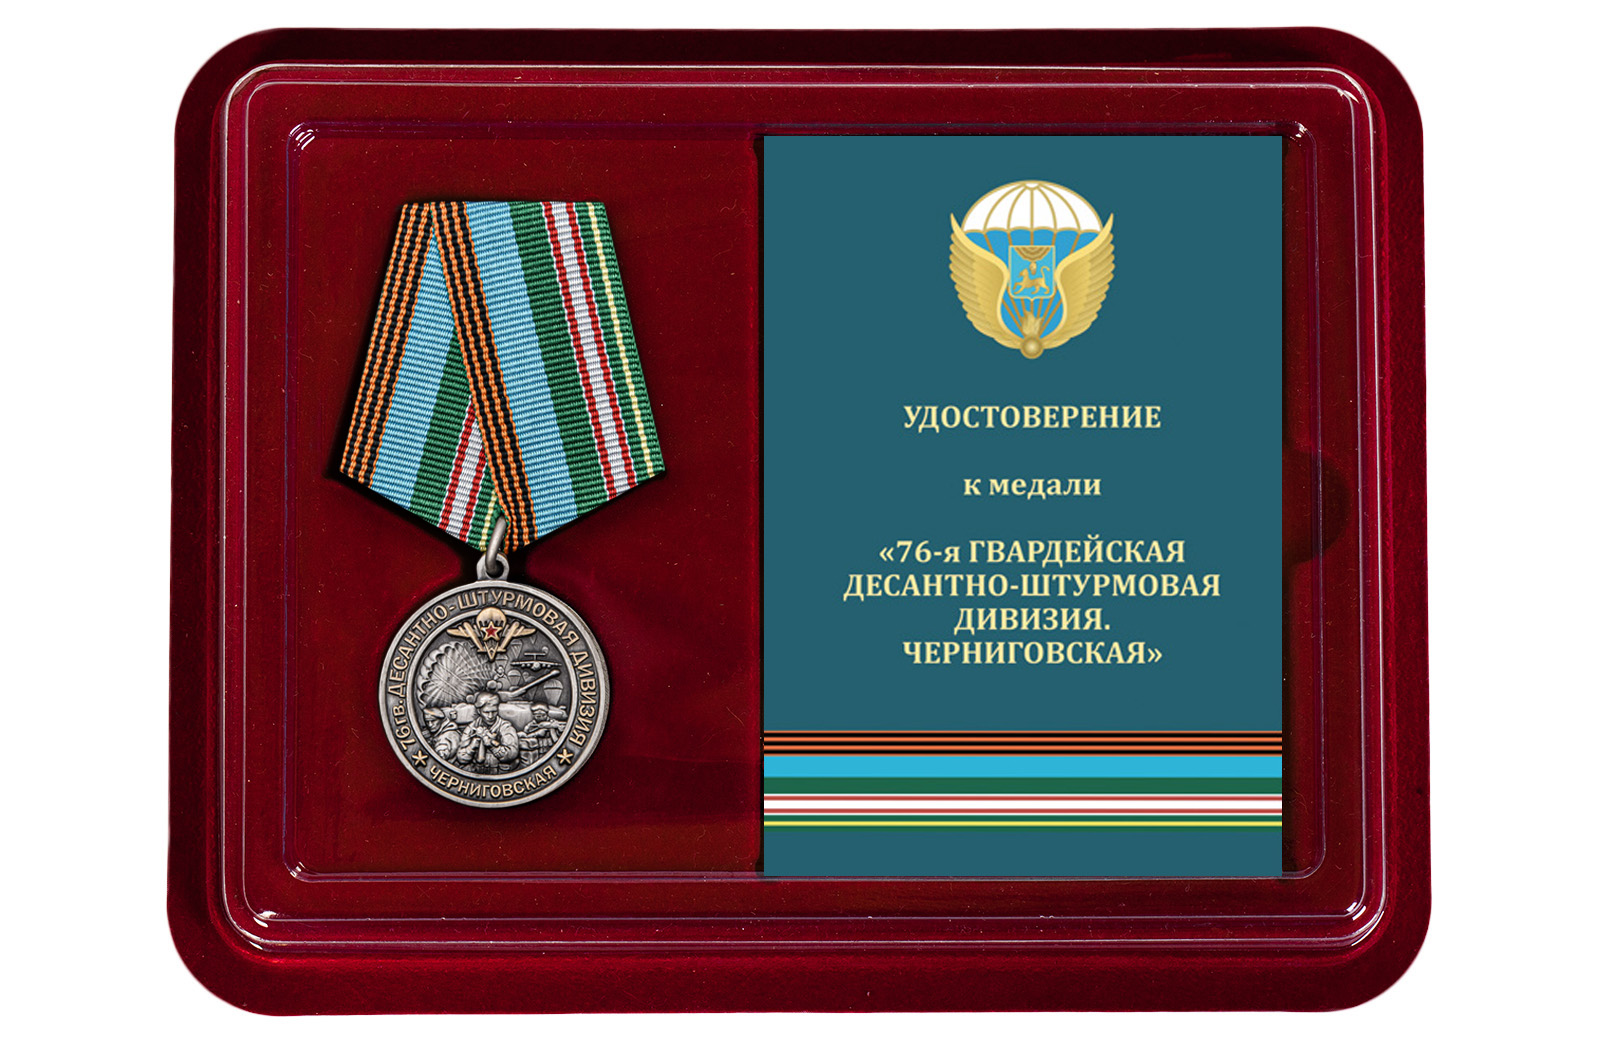 Купить медаль 76-я гв. Десантно-штурмовая дивизия по экономичной цене